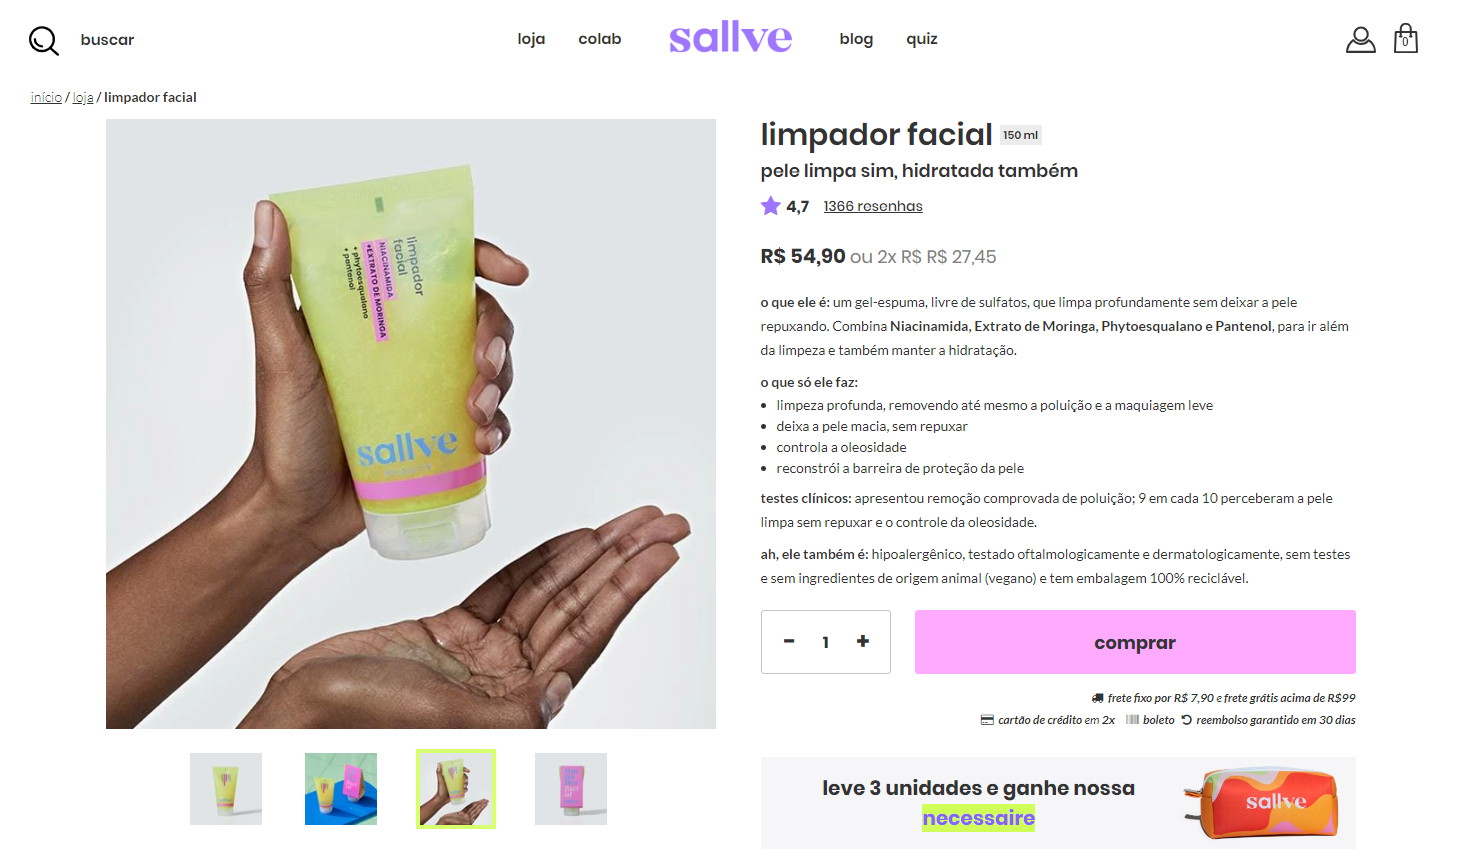 Exemplo da Sallve, que utiliza as práticas recomendadas de fotografia no design para loja virtual